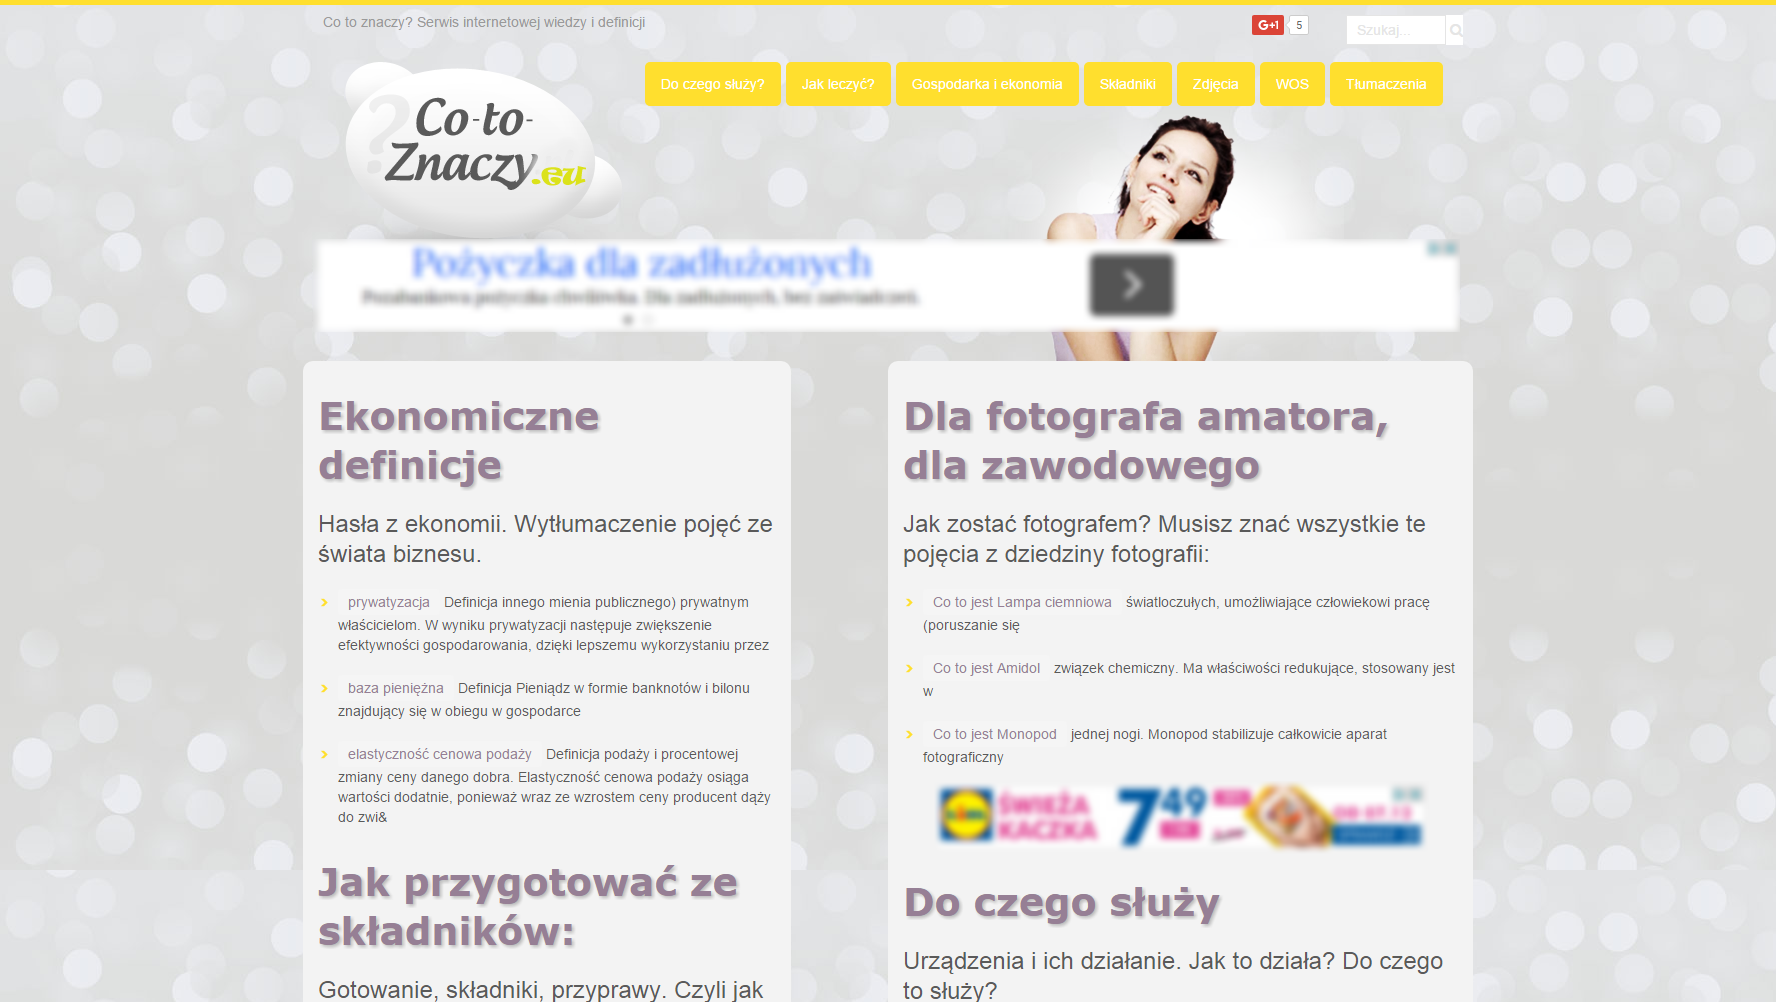 Project Co-To-Znaczy.eu